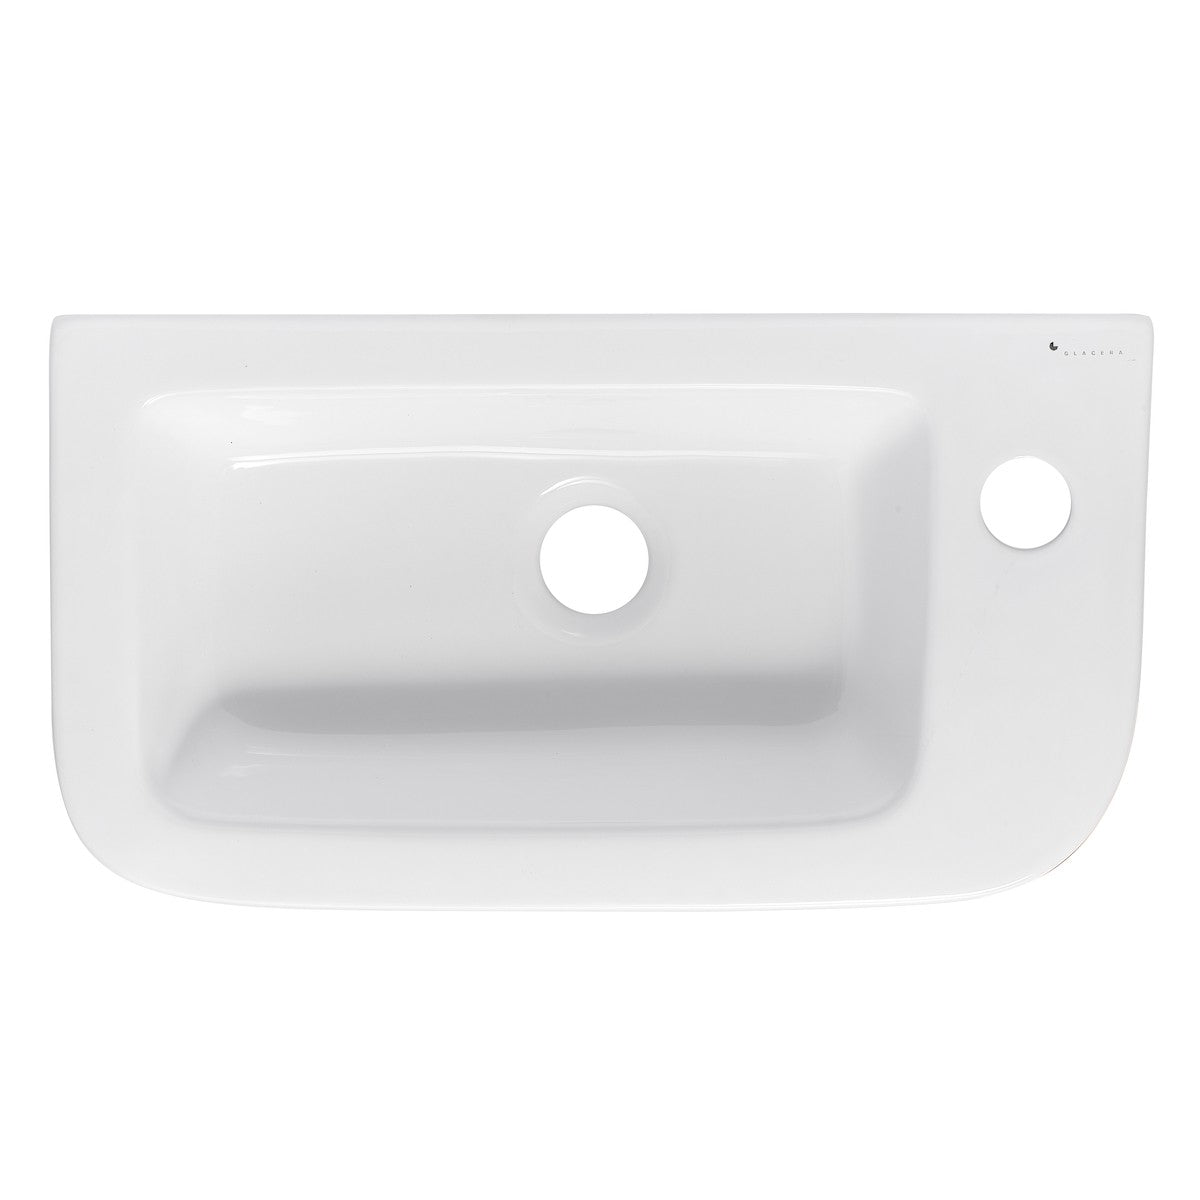 Umivalniki BG4626 desna izvedba Glacera Bigio 45 x 24 cm univerzalni keramični umivalnik z odprtino za armaturo | KOPALNICA-ONLINE.SI